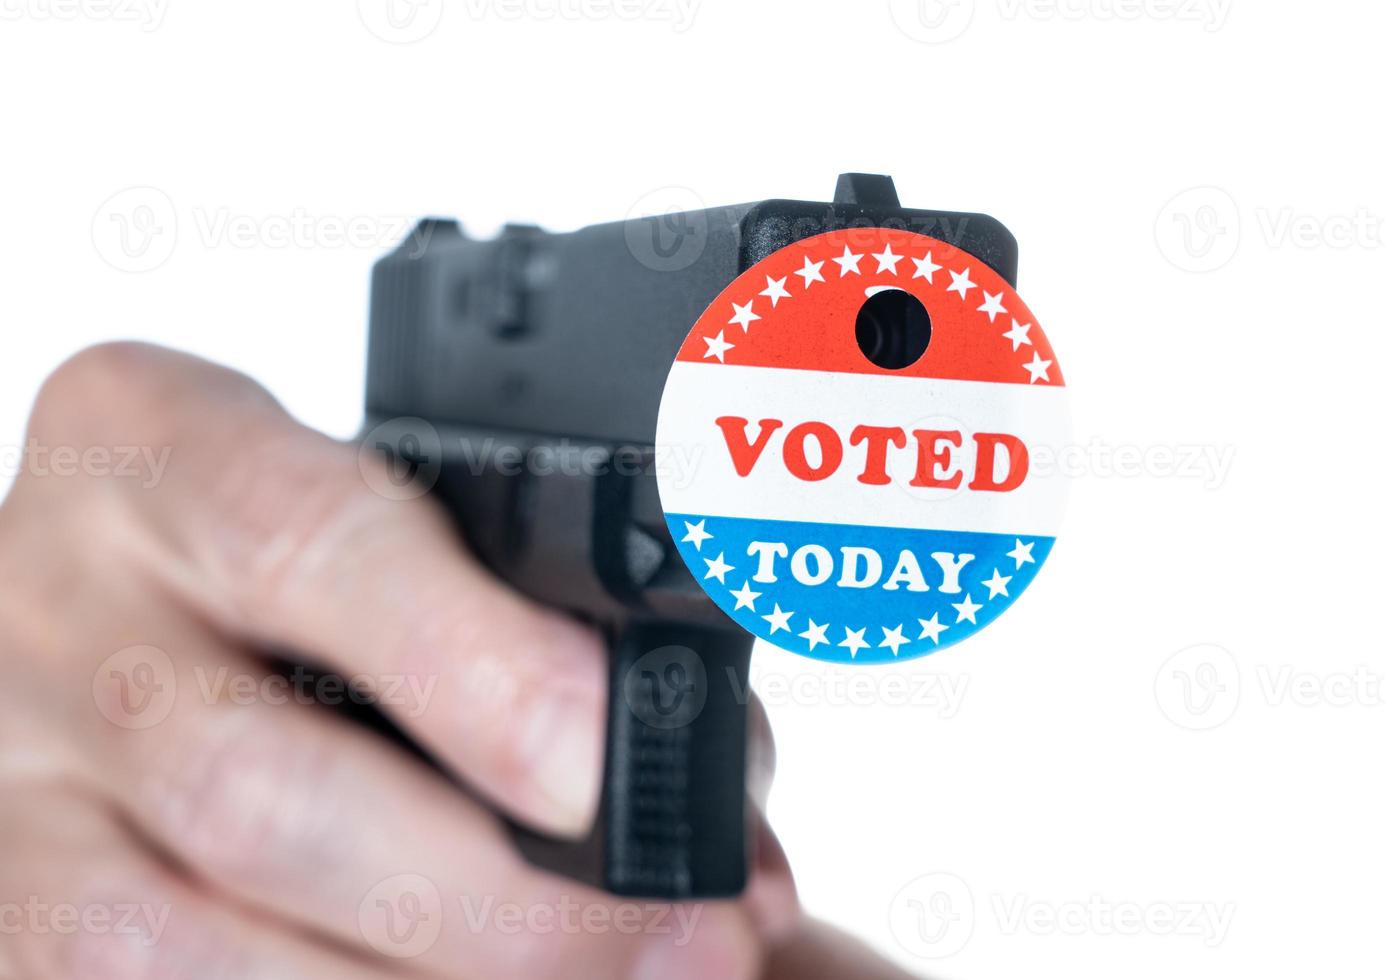 ik heb vandaag gestemd campagneknop met gat op pistool voor onderdrukking van kiezers foto